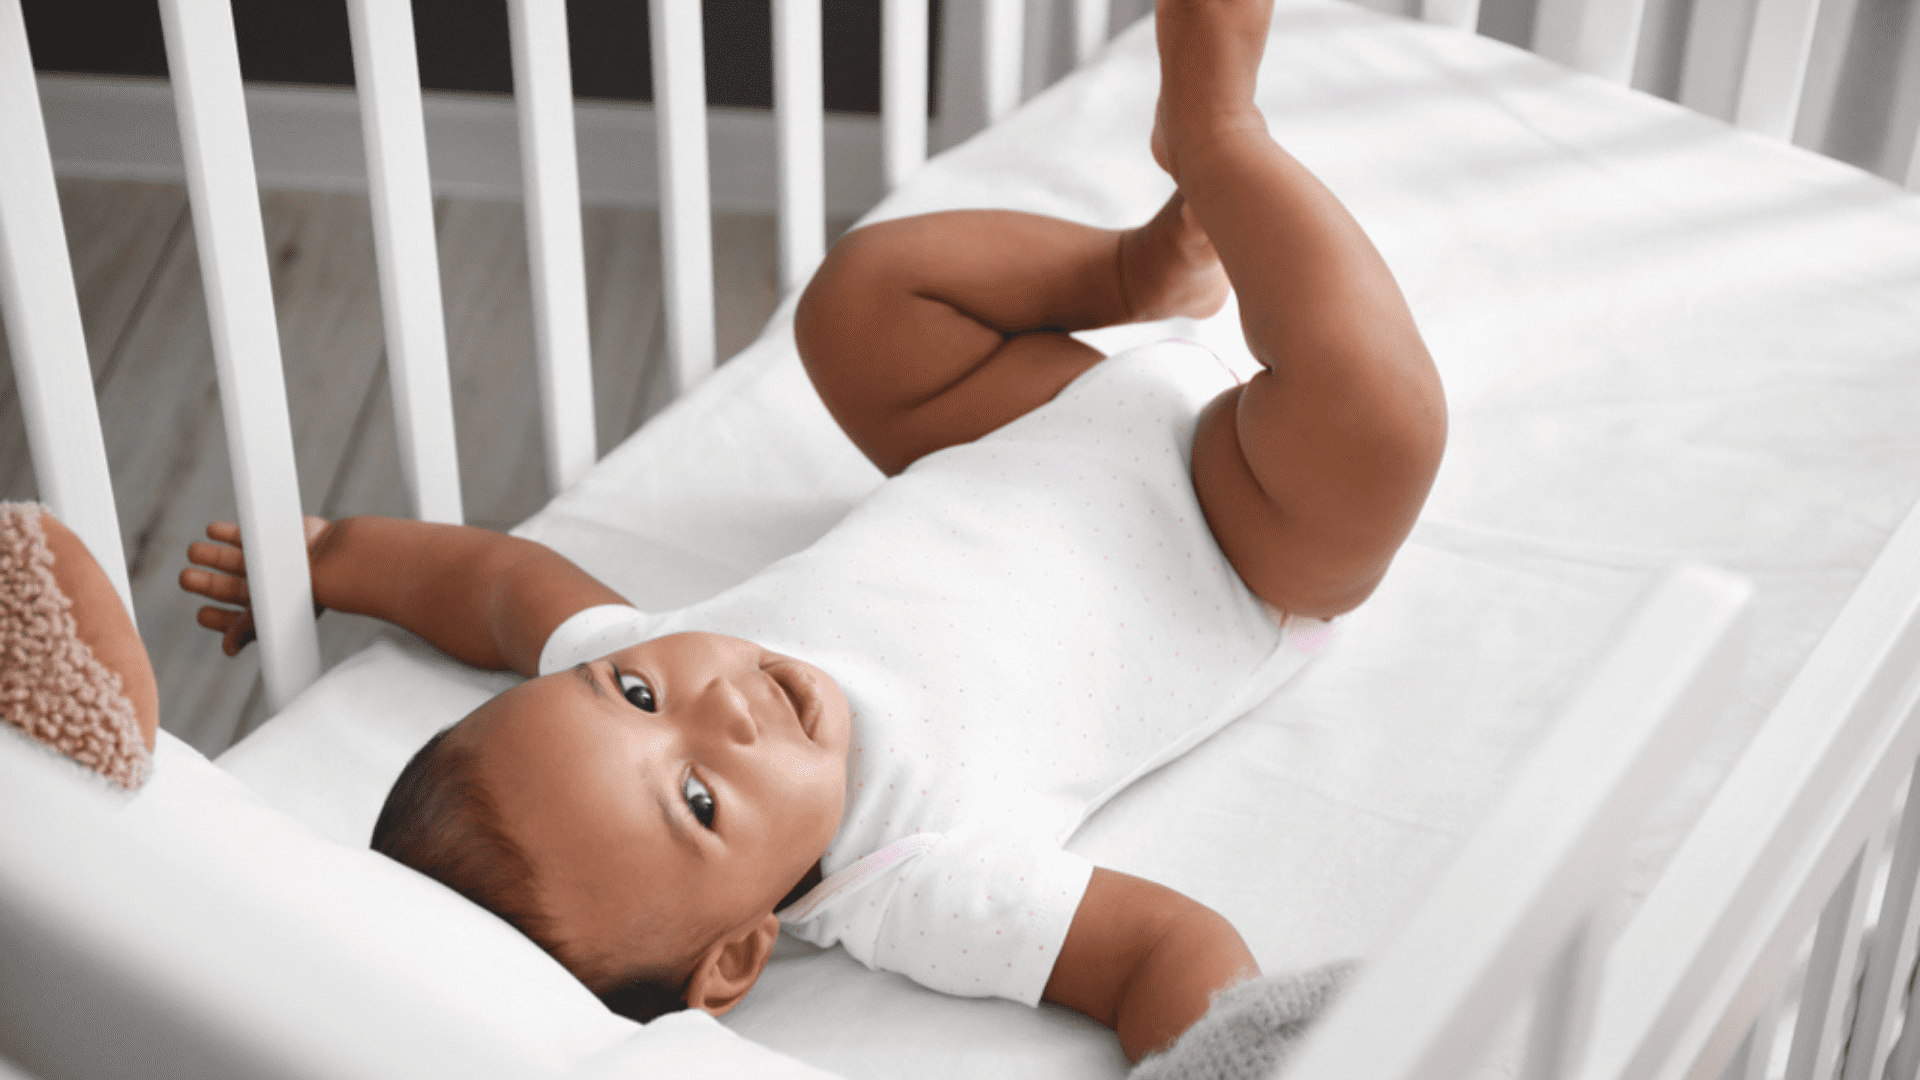 Melhores berços de bebê de 2020: 7 modelos para comprar